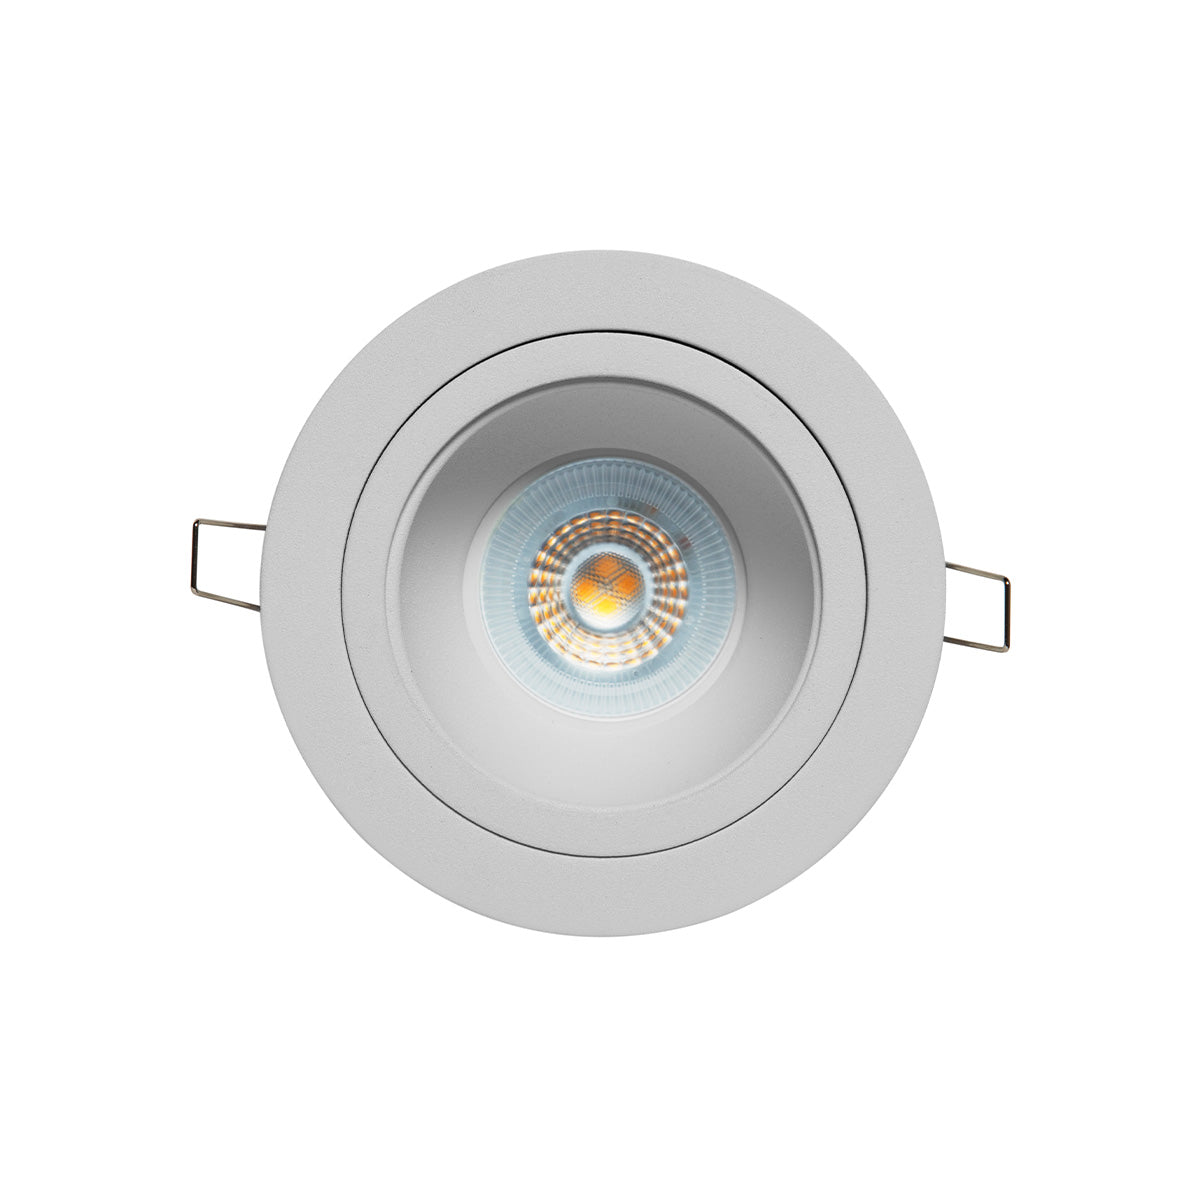 Luminario downlight redondo para empotrar en techo opera lámpara MR16, Modelo TH-1226 Illux